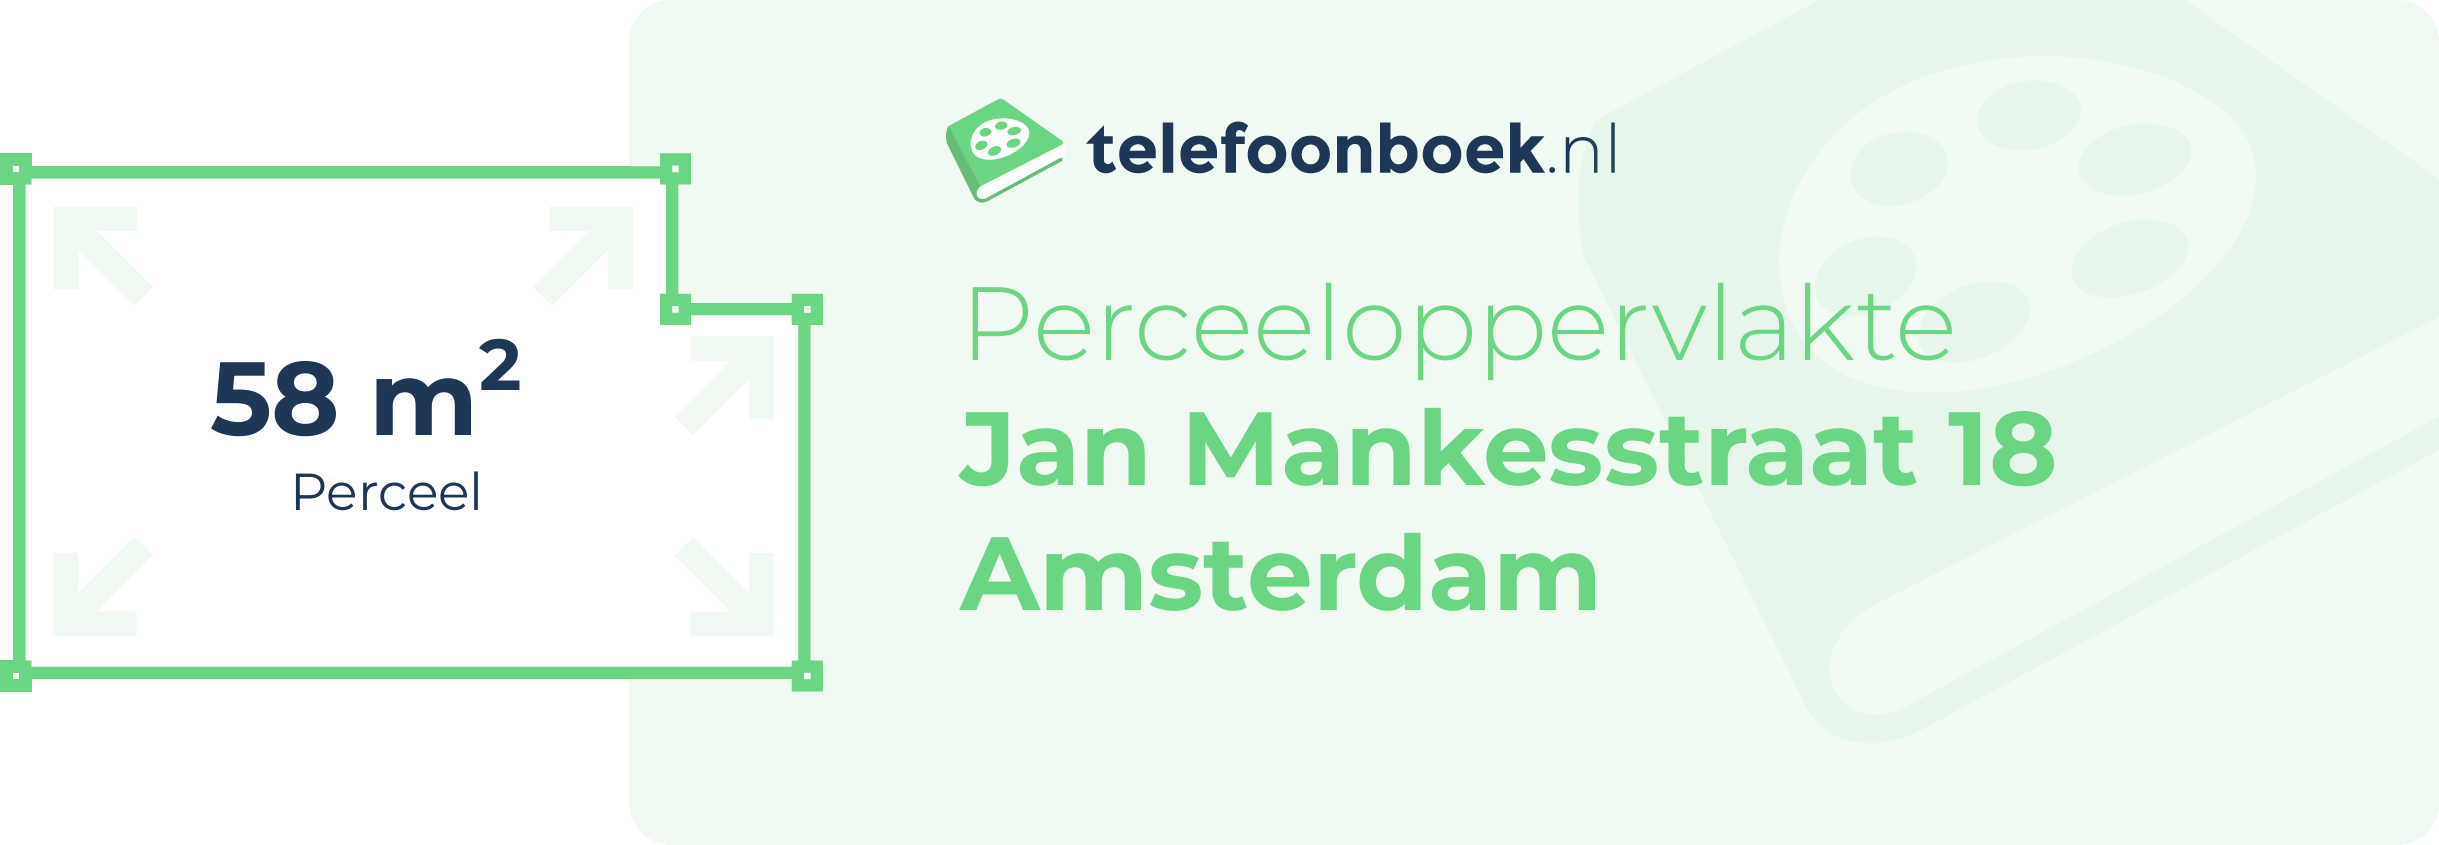 Perceeloppervlakte Jan Mankesstraat 18 Amsterdam